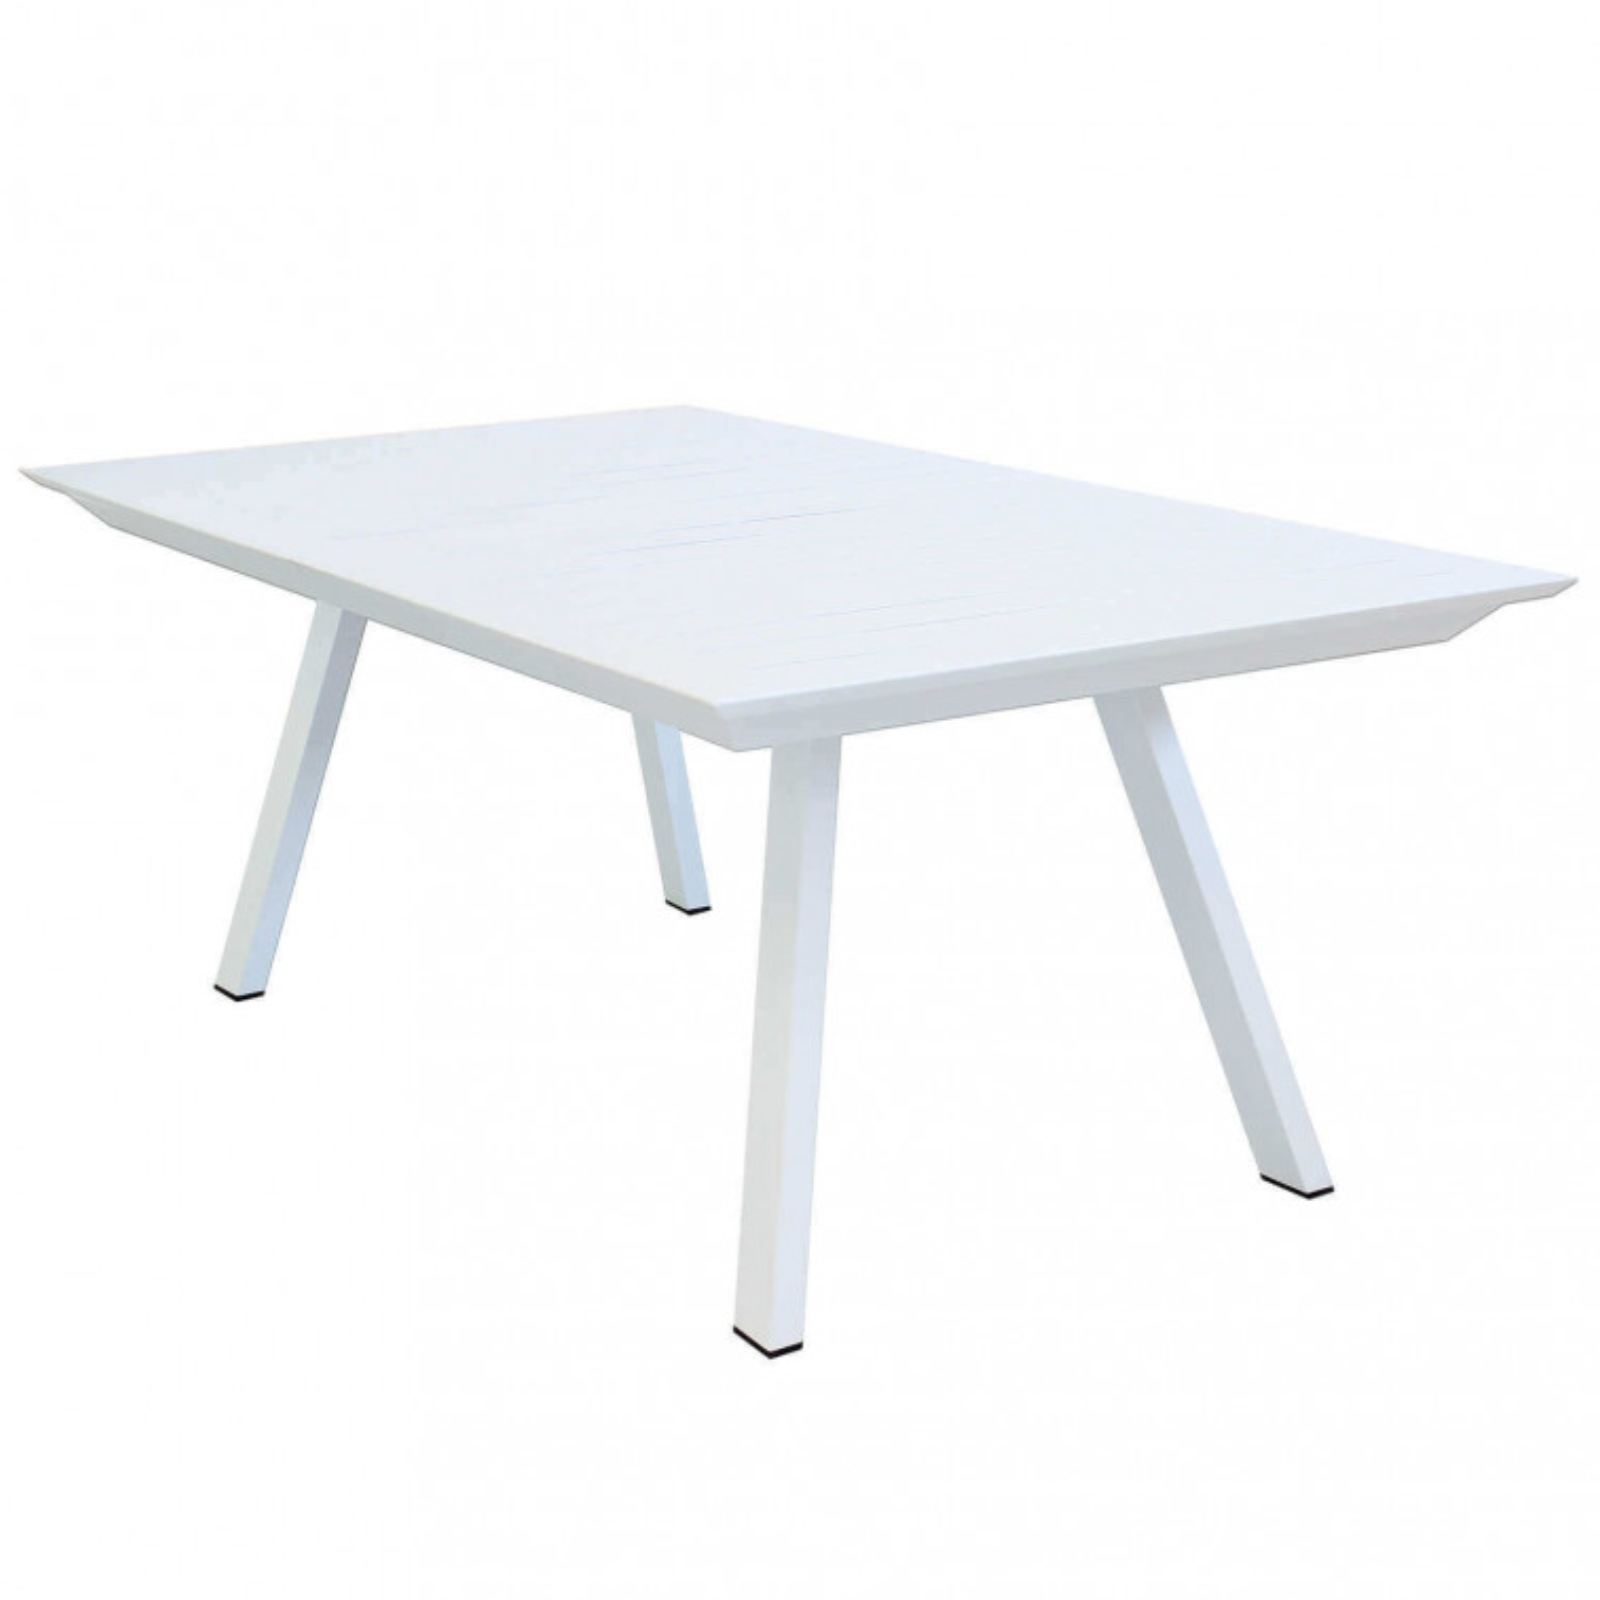 Tavolo allungabile 200/300 design moderno in alluminio bianco da esterno o interno - Zante